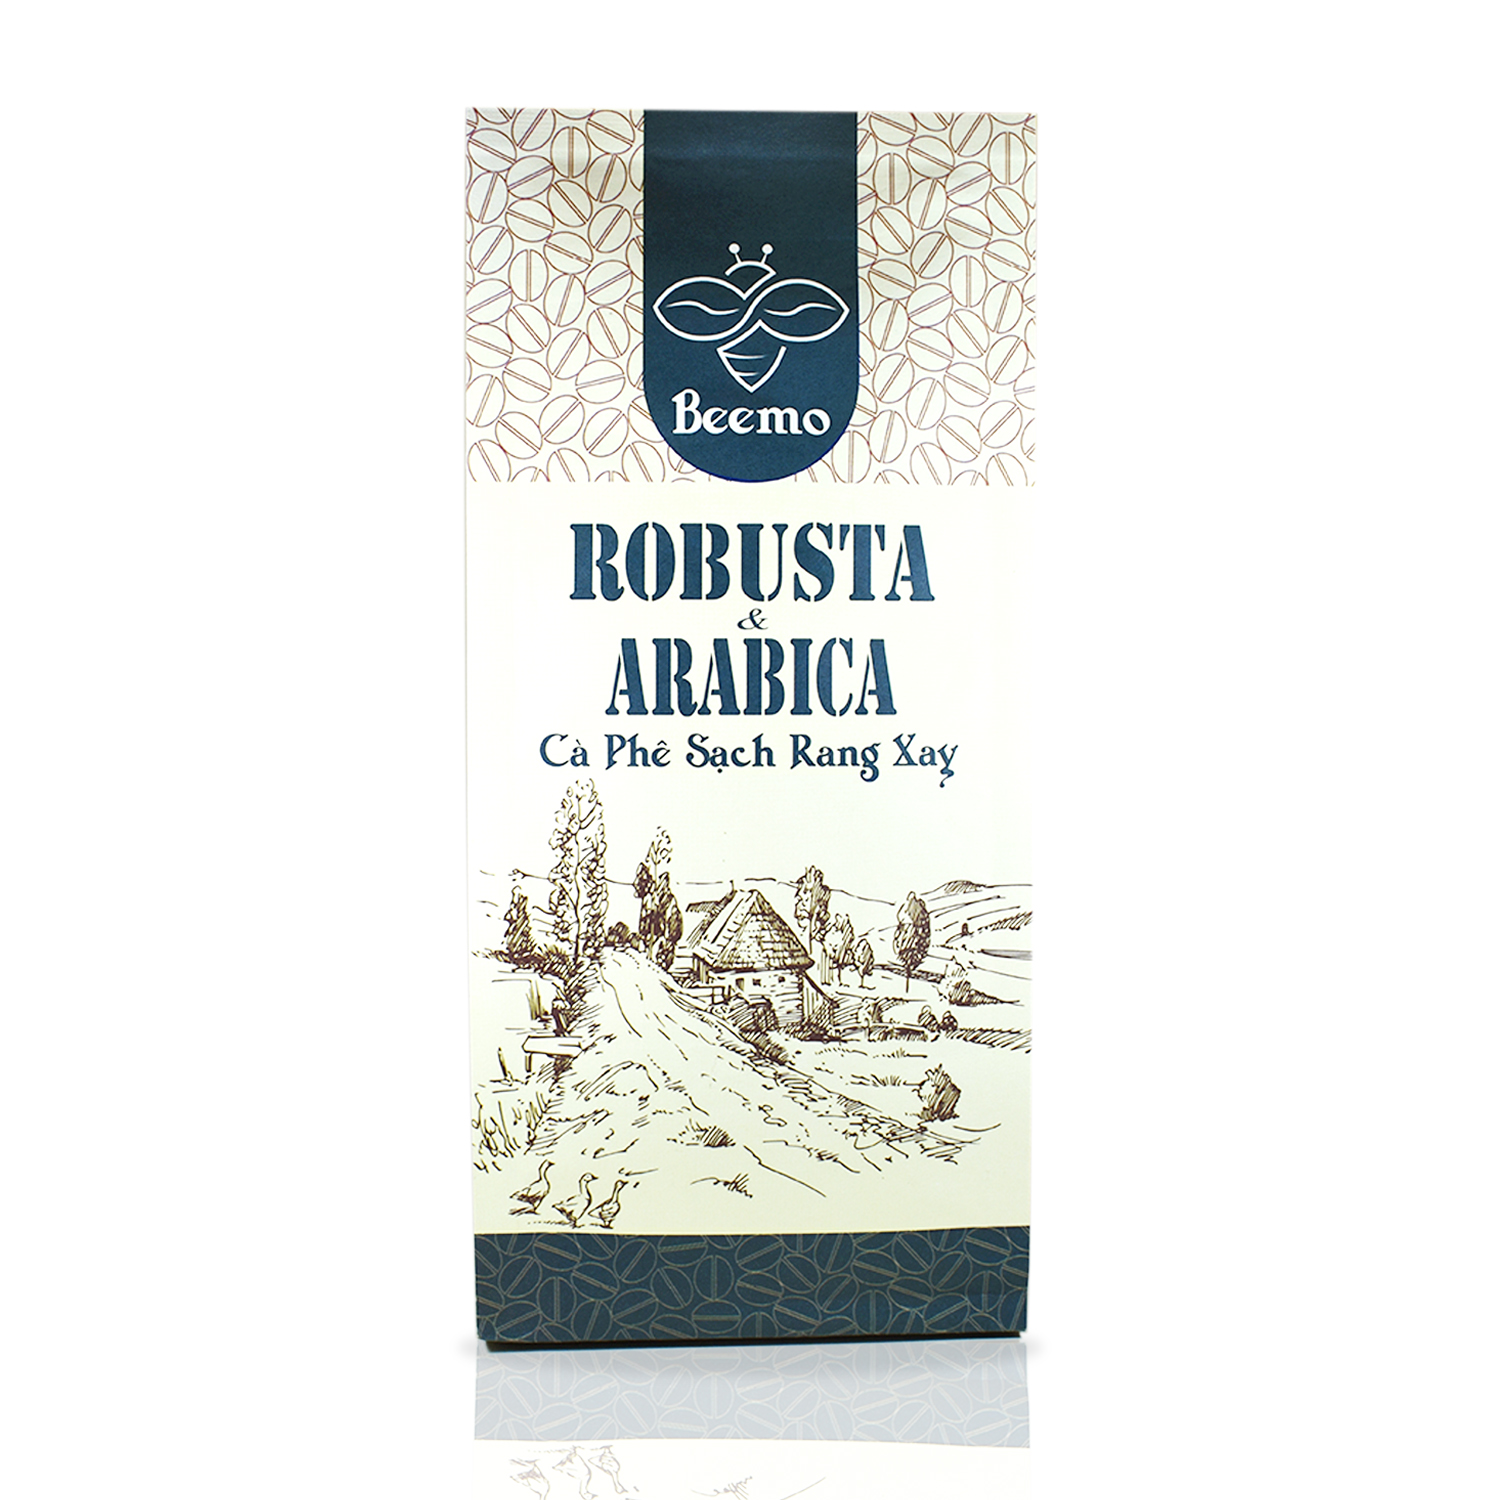 Cà phê nguyên chất Robusta phối Arabica, cafe mộc rang xay Beemo 500g - Đắng vừa, chua nhẹ, thơm nồng nàn